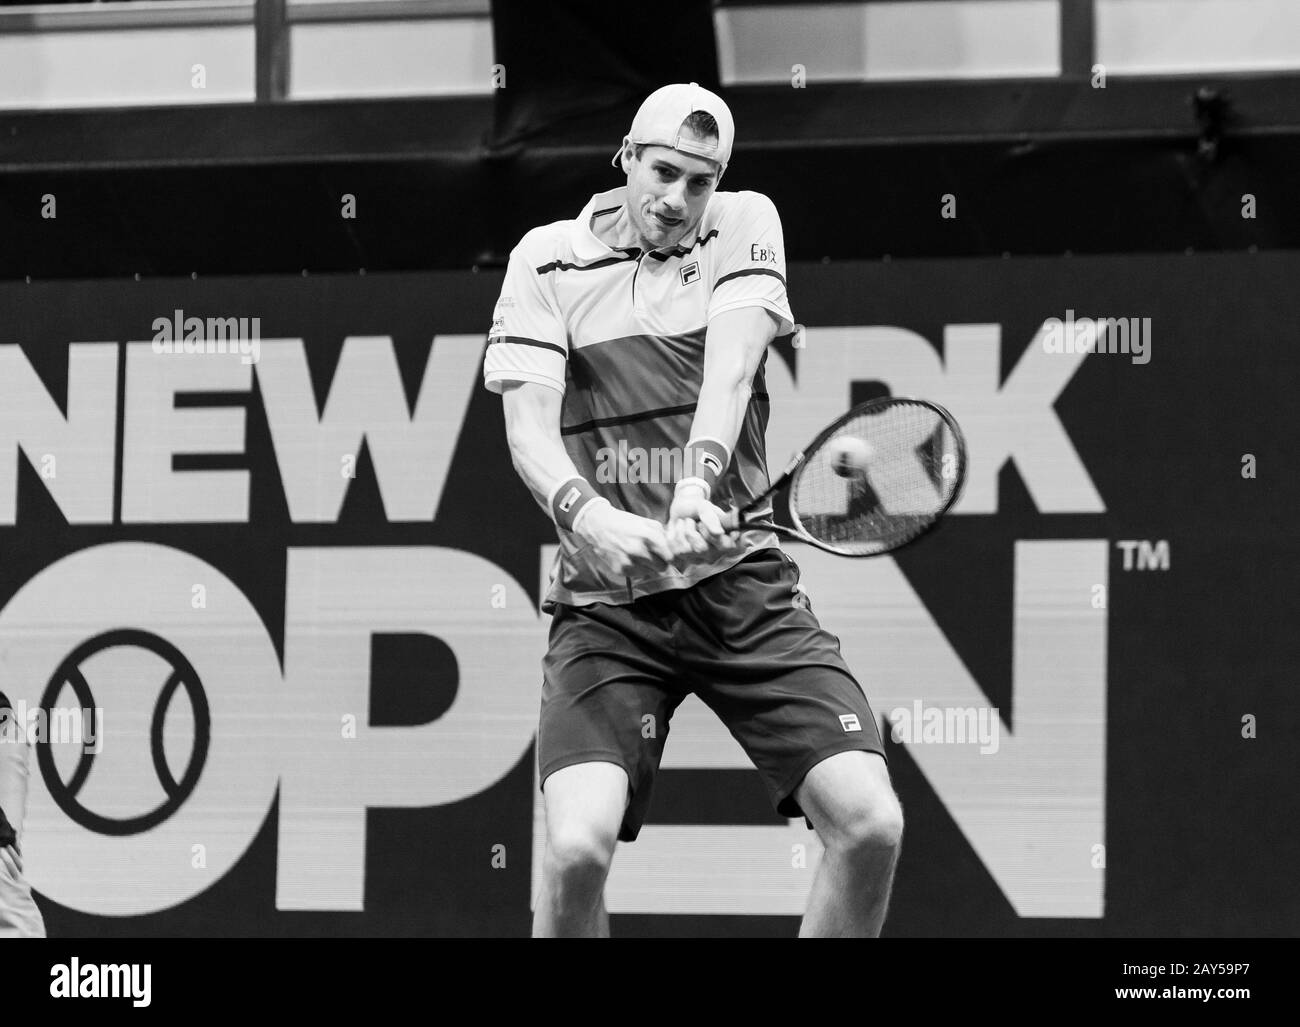 Hempstead, NY - 13 février 2020: John Isner, des États-Unis, retourne le ballon lors du deuxième match contre Jordan Thompson, d'Australie, au tournoi de tennis ATP 250 New York Open 2020 au Nassau Coliseum, Thompson a remporté le match Banque D'Images